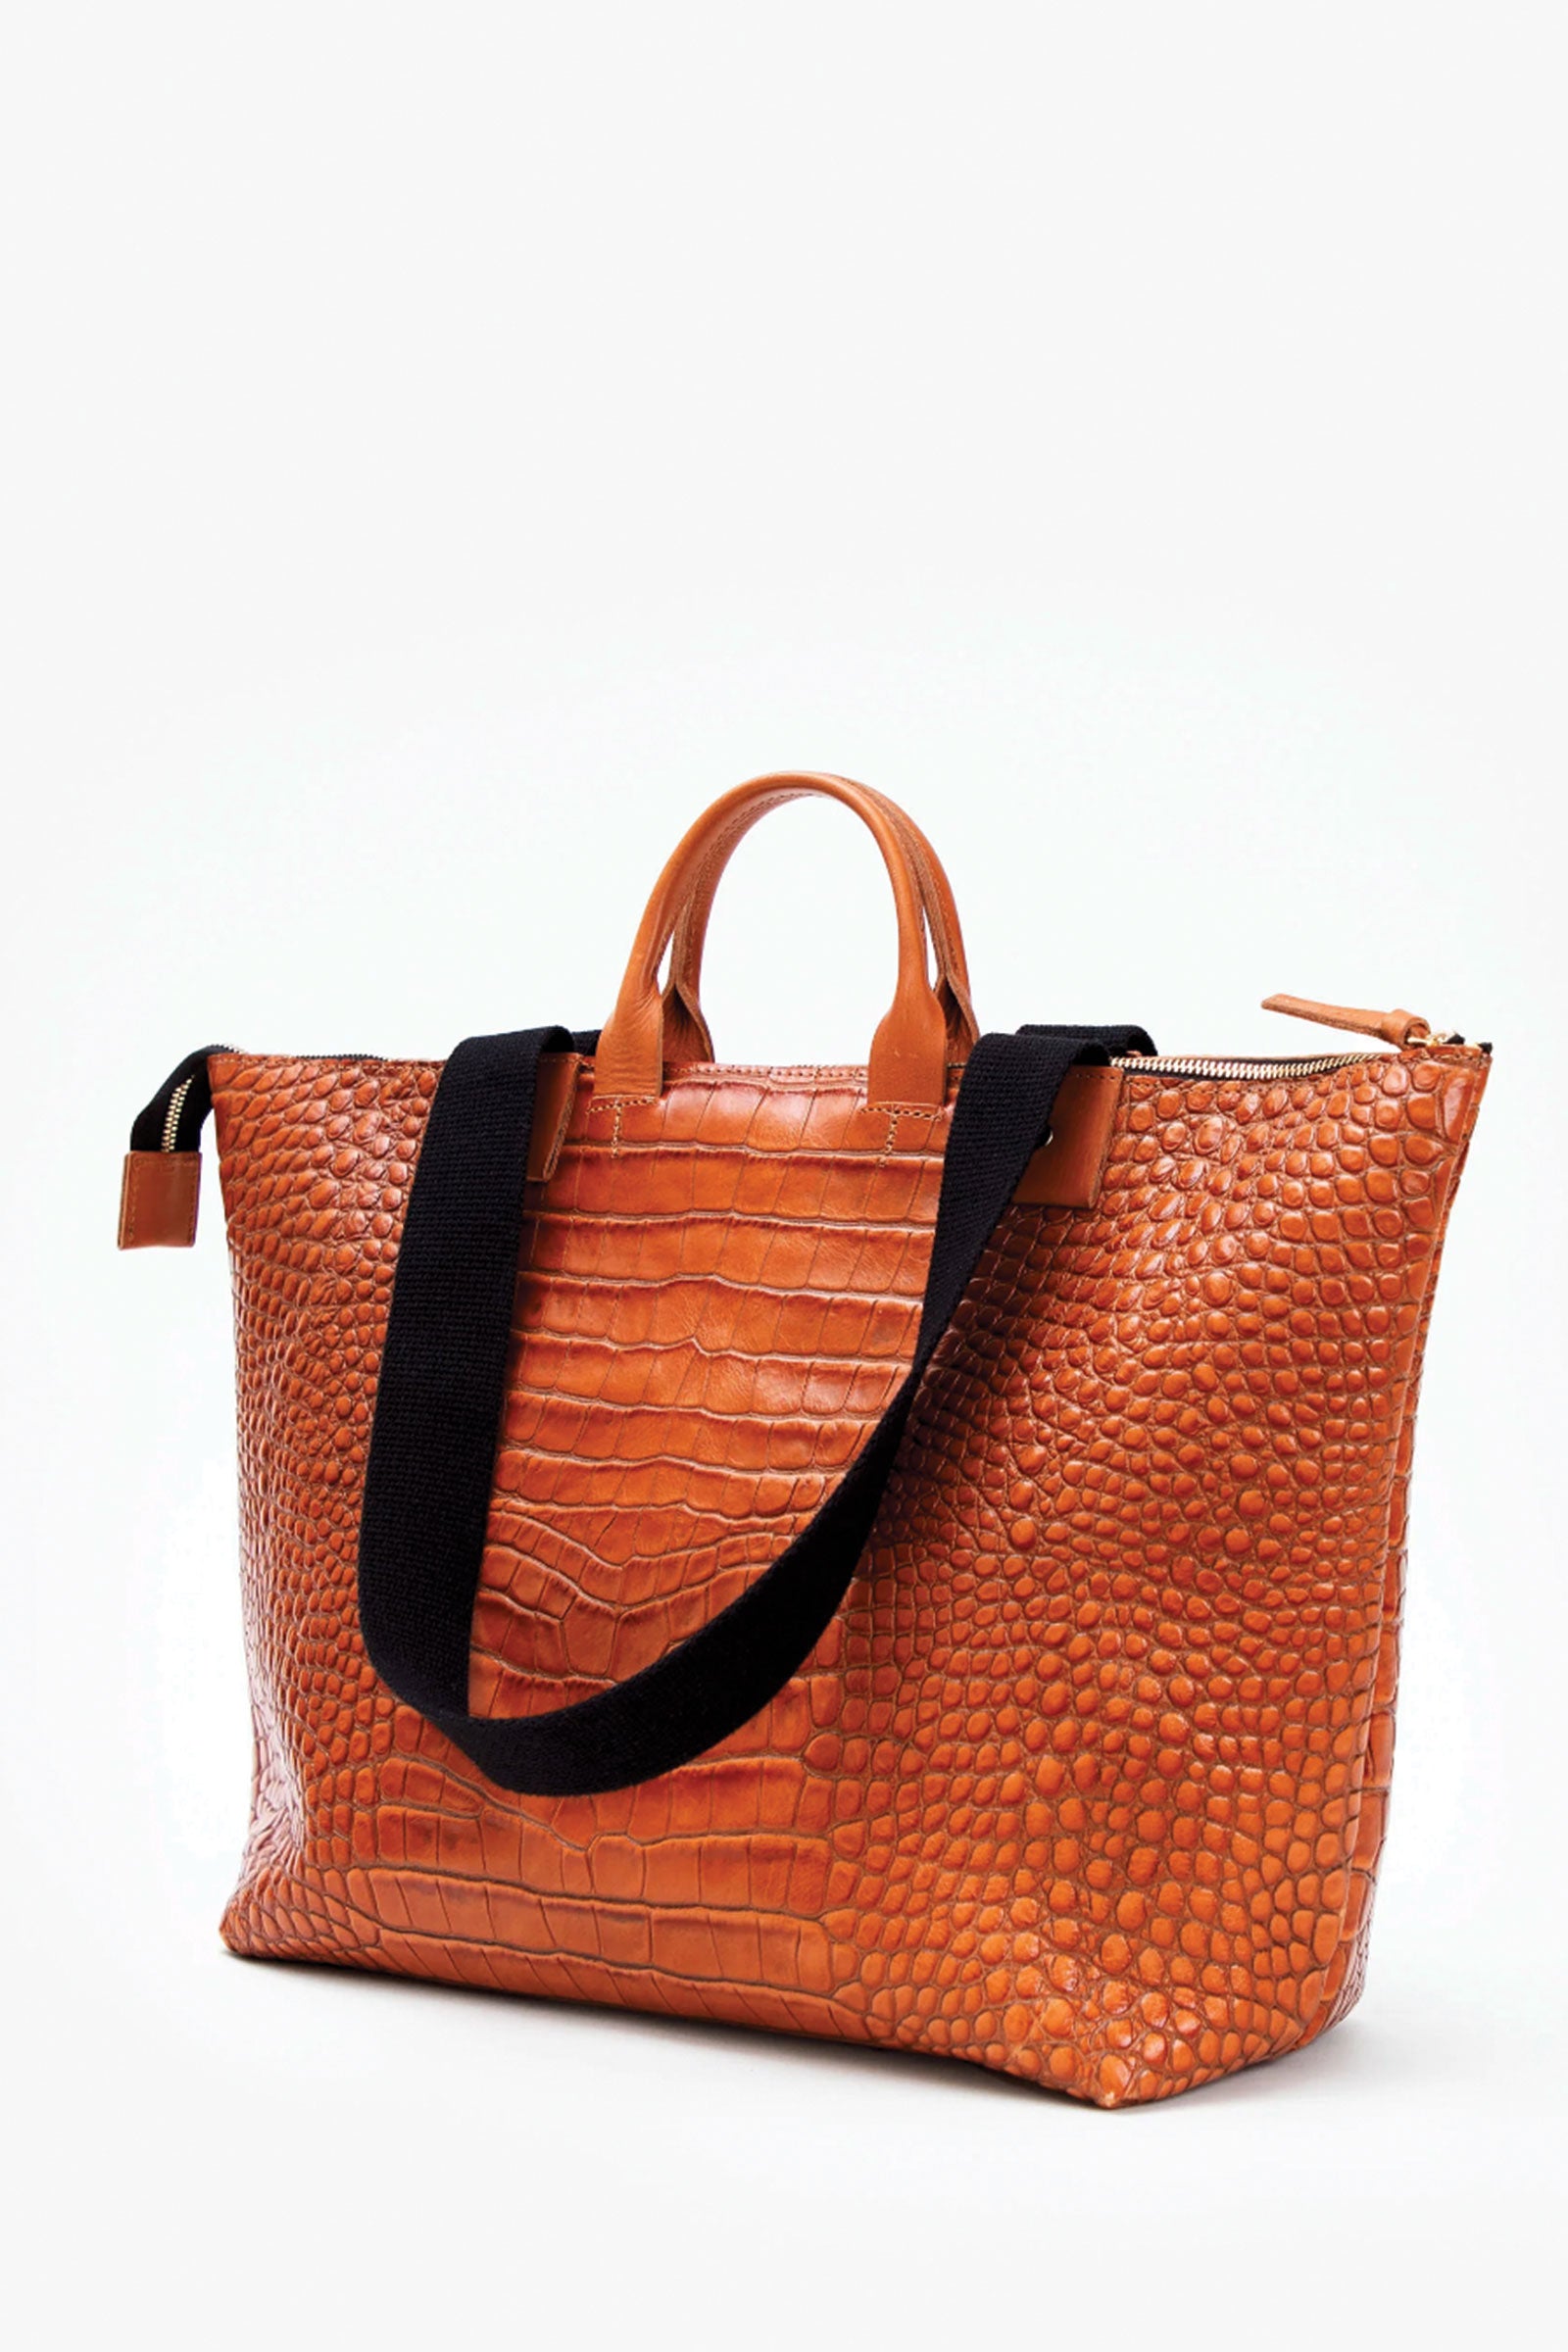 Clare Vivier + Le Box Leather Bag